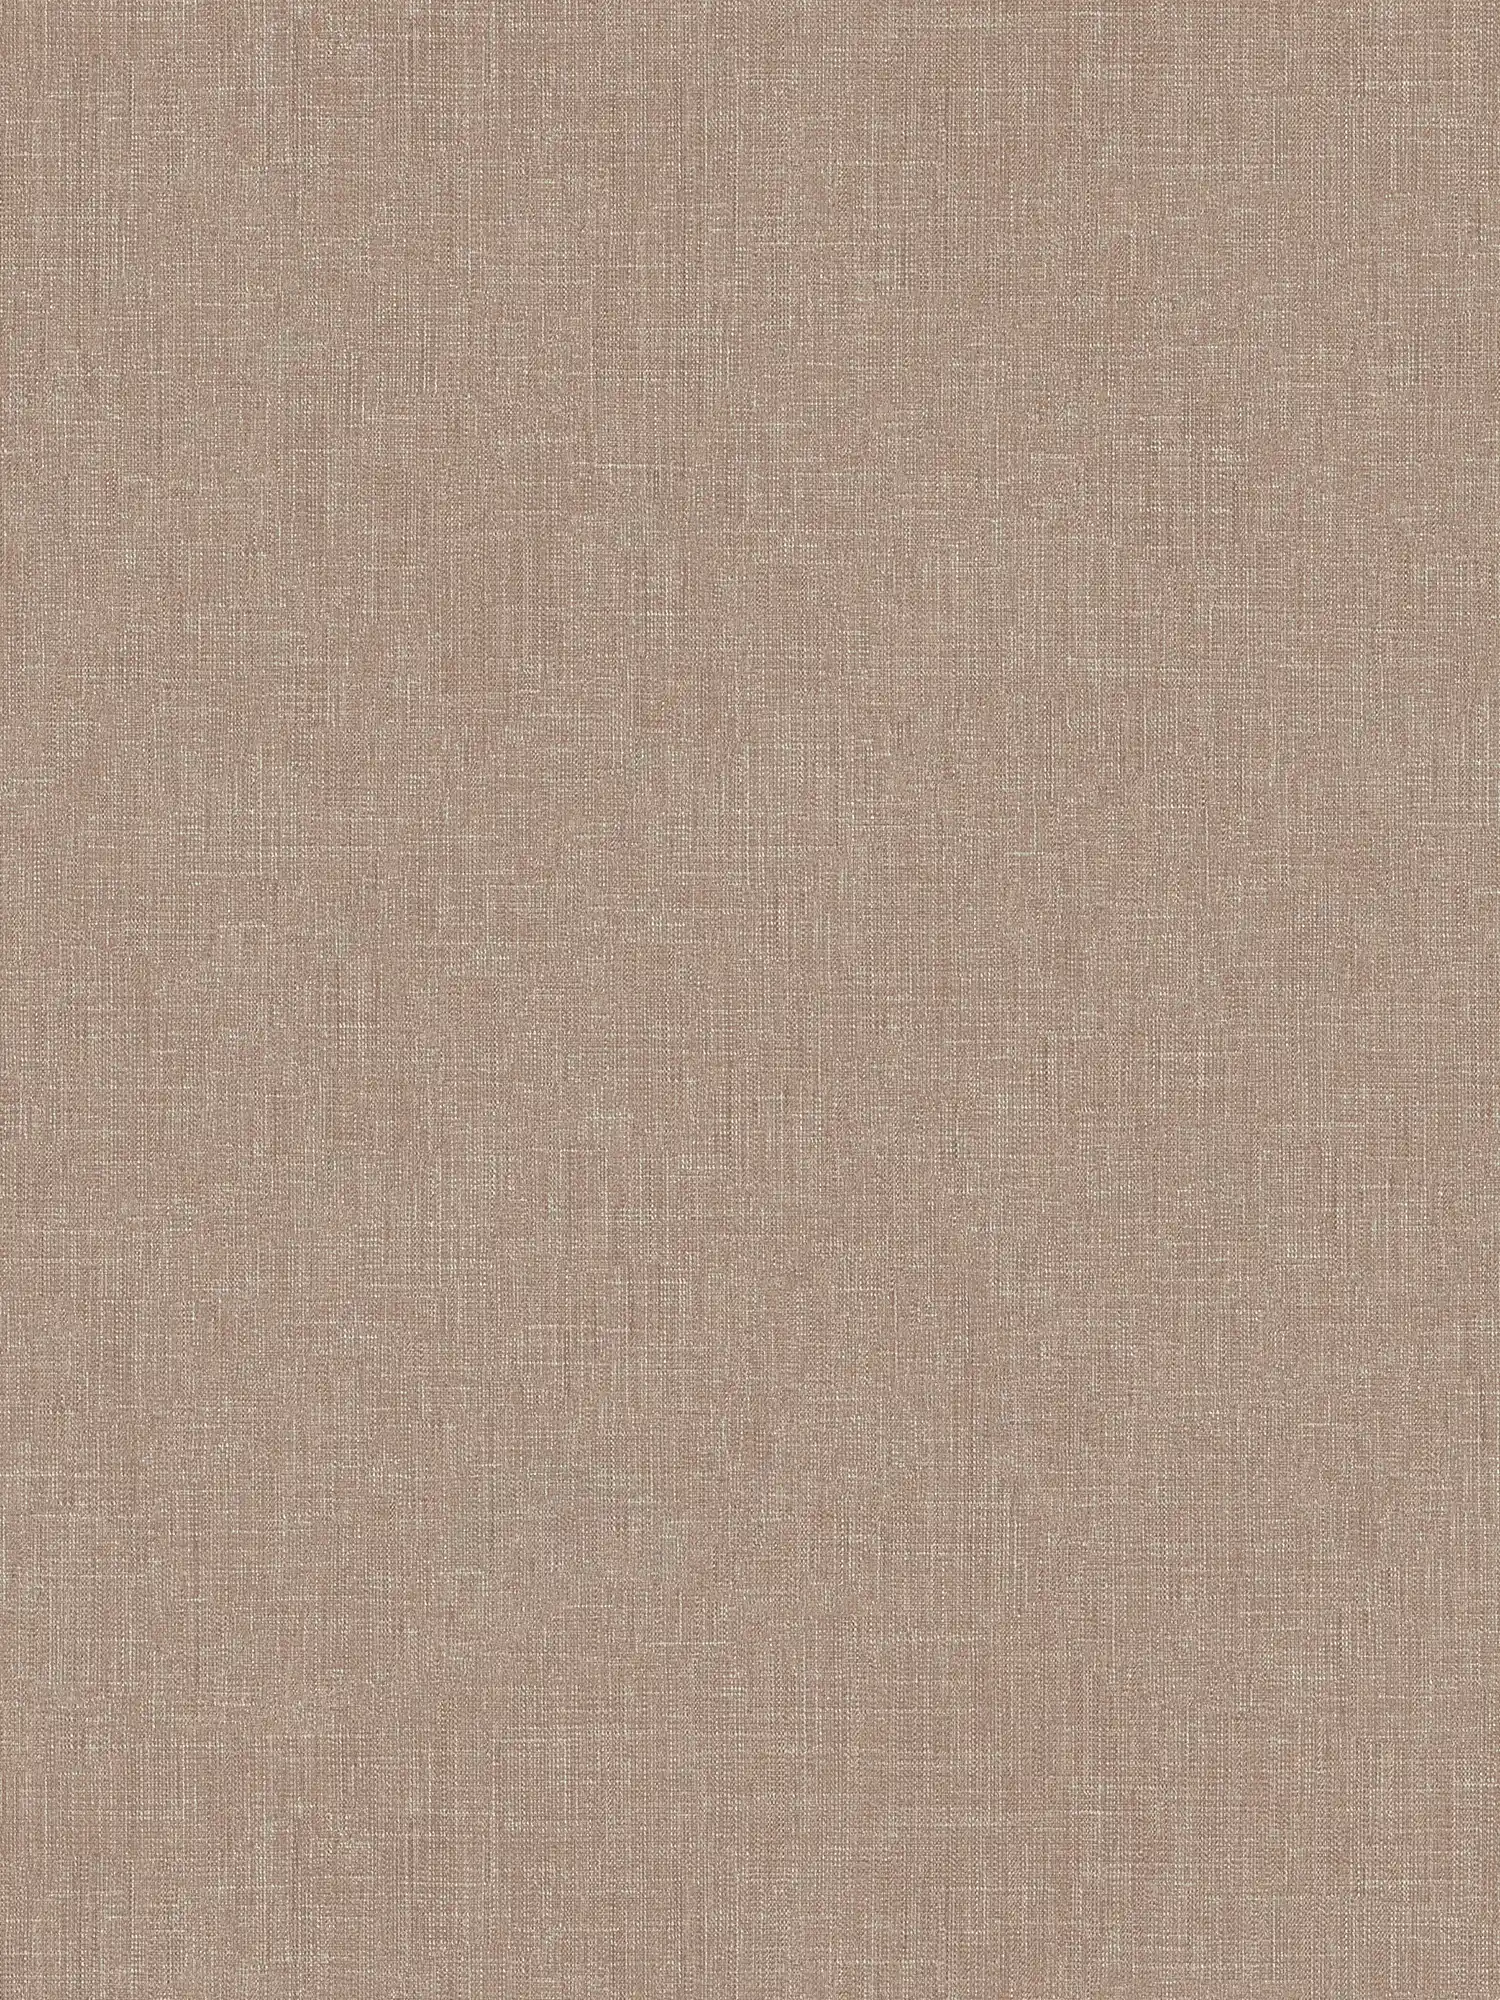 papier peint imitation lin marron chiné avec structure textile
